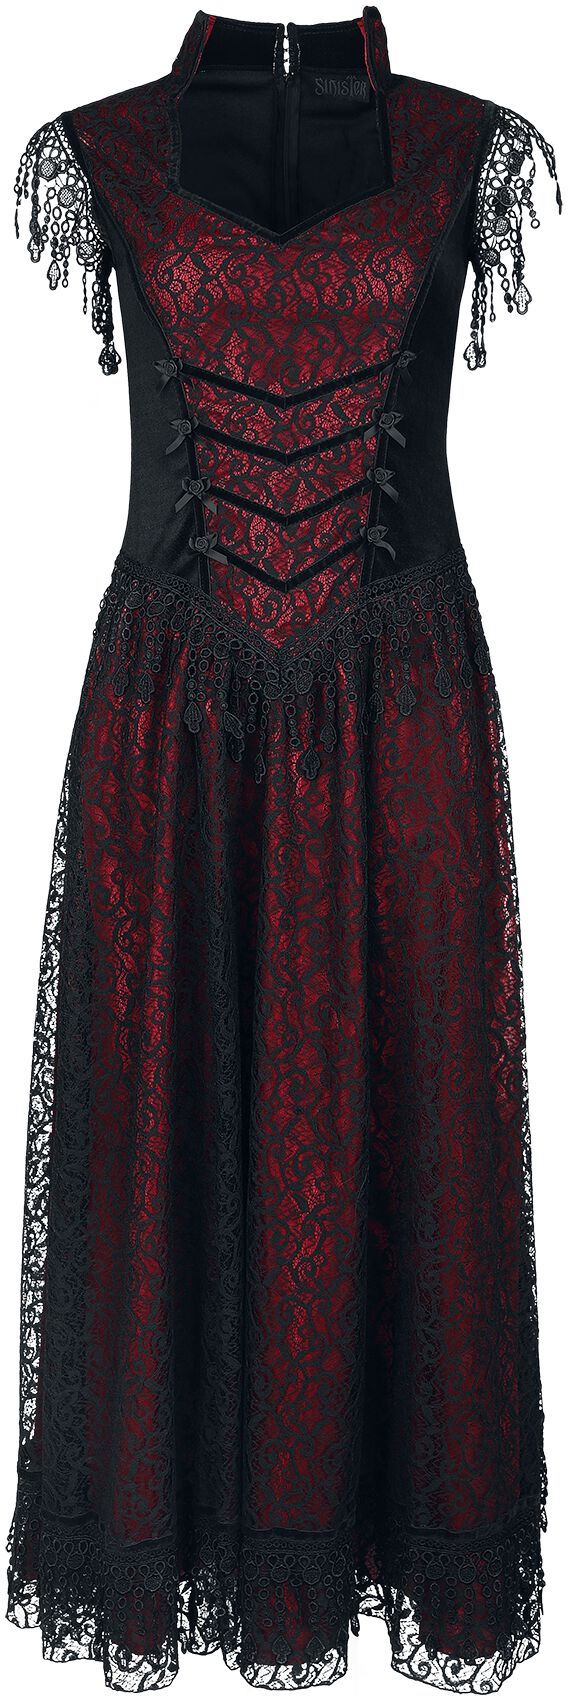 Sinister Gothic Gothic Dress Langes Kleid schwarz rot in XXL